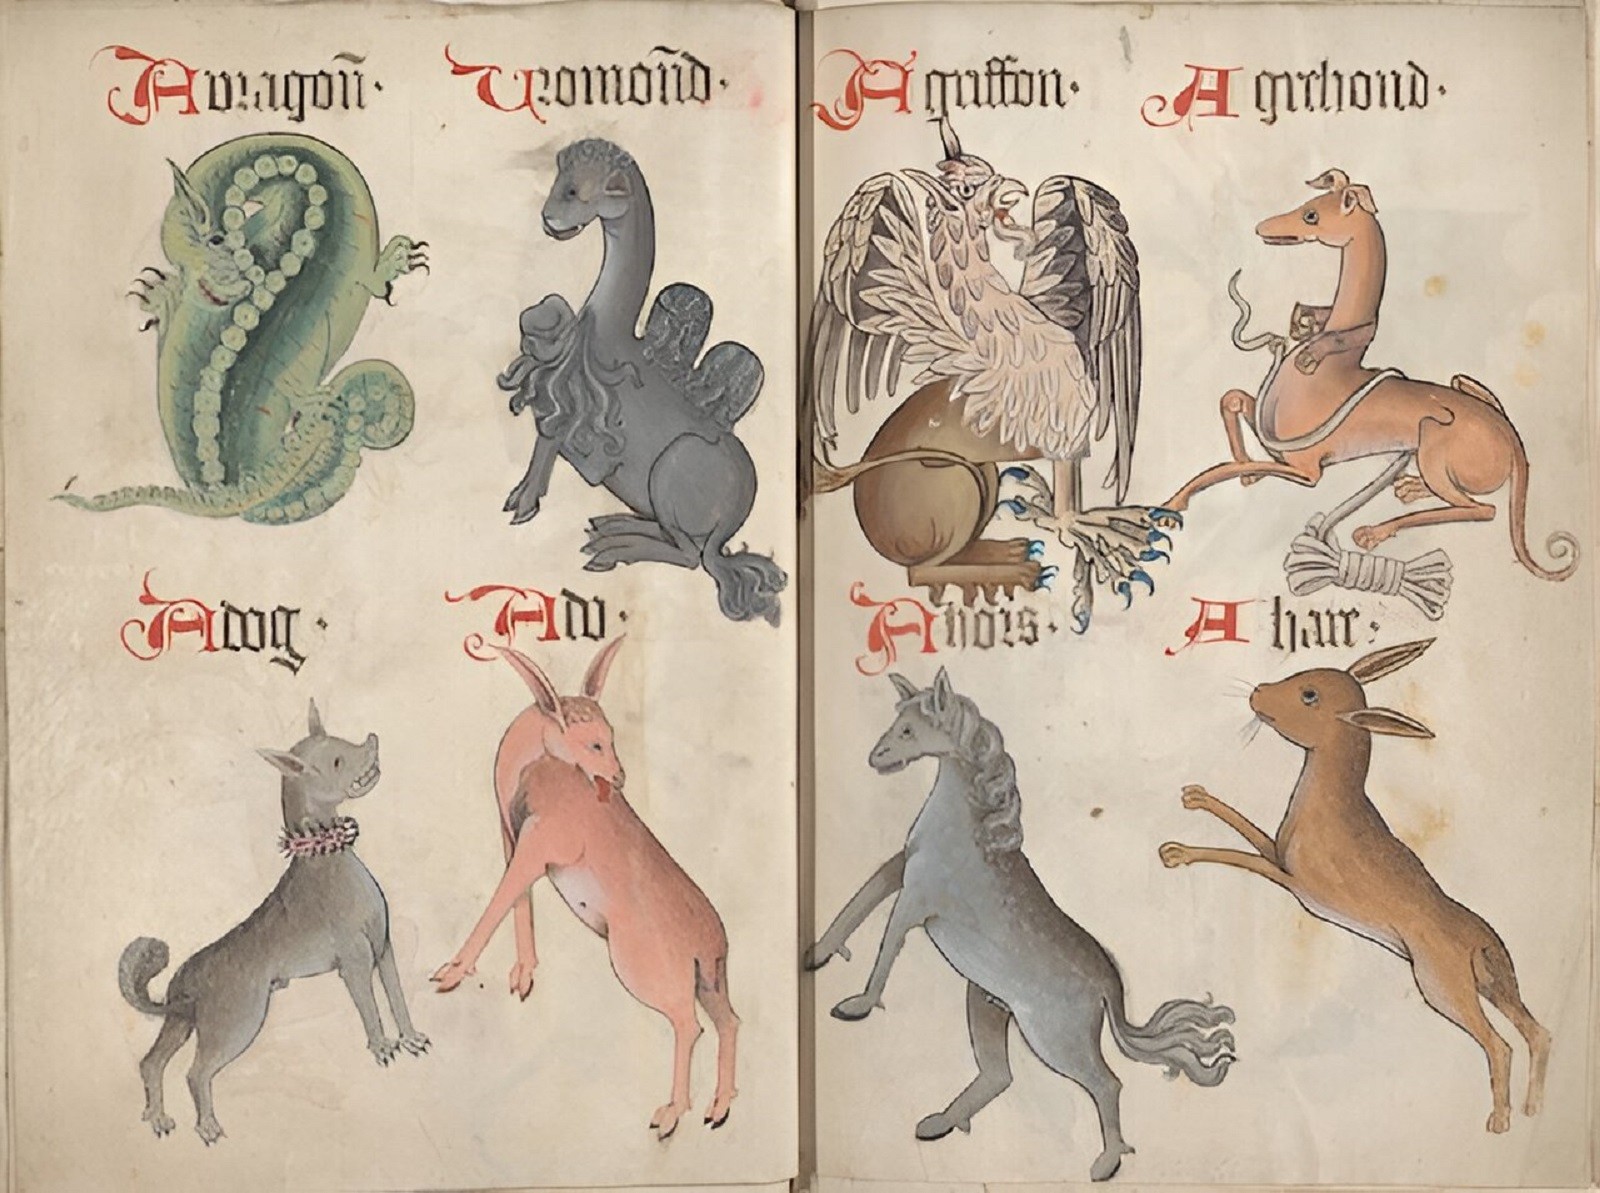 Jak wyglądało życie psów w średniowieczu?